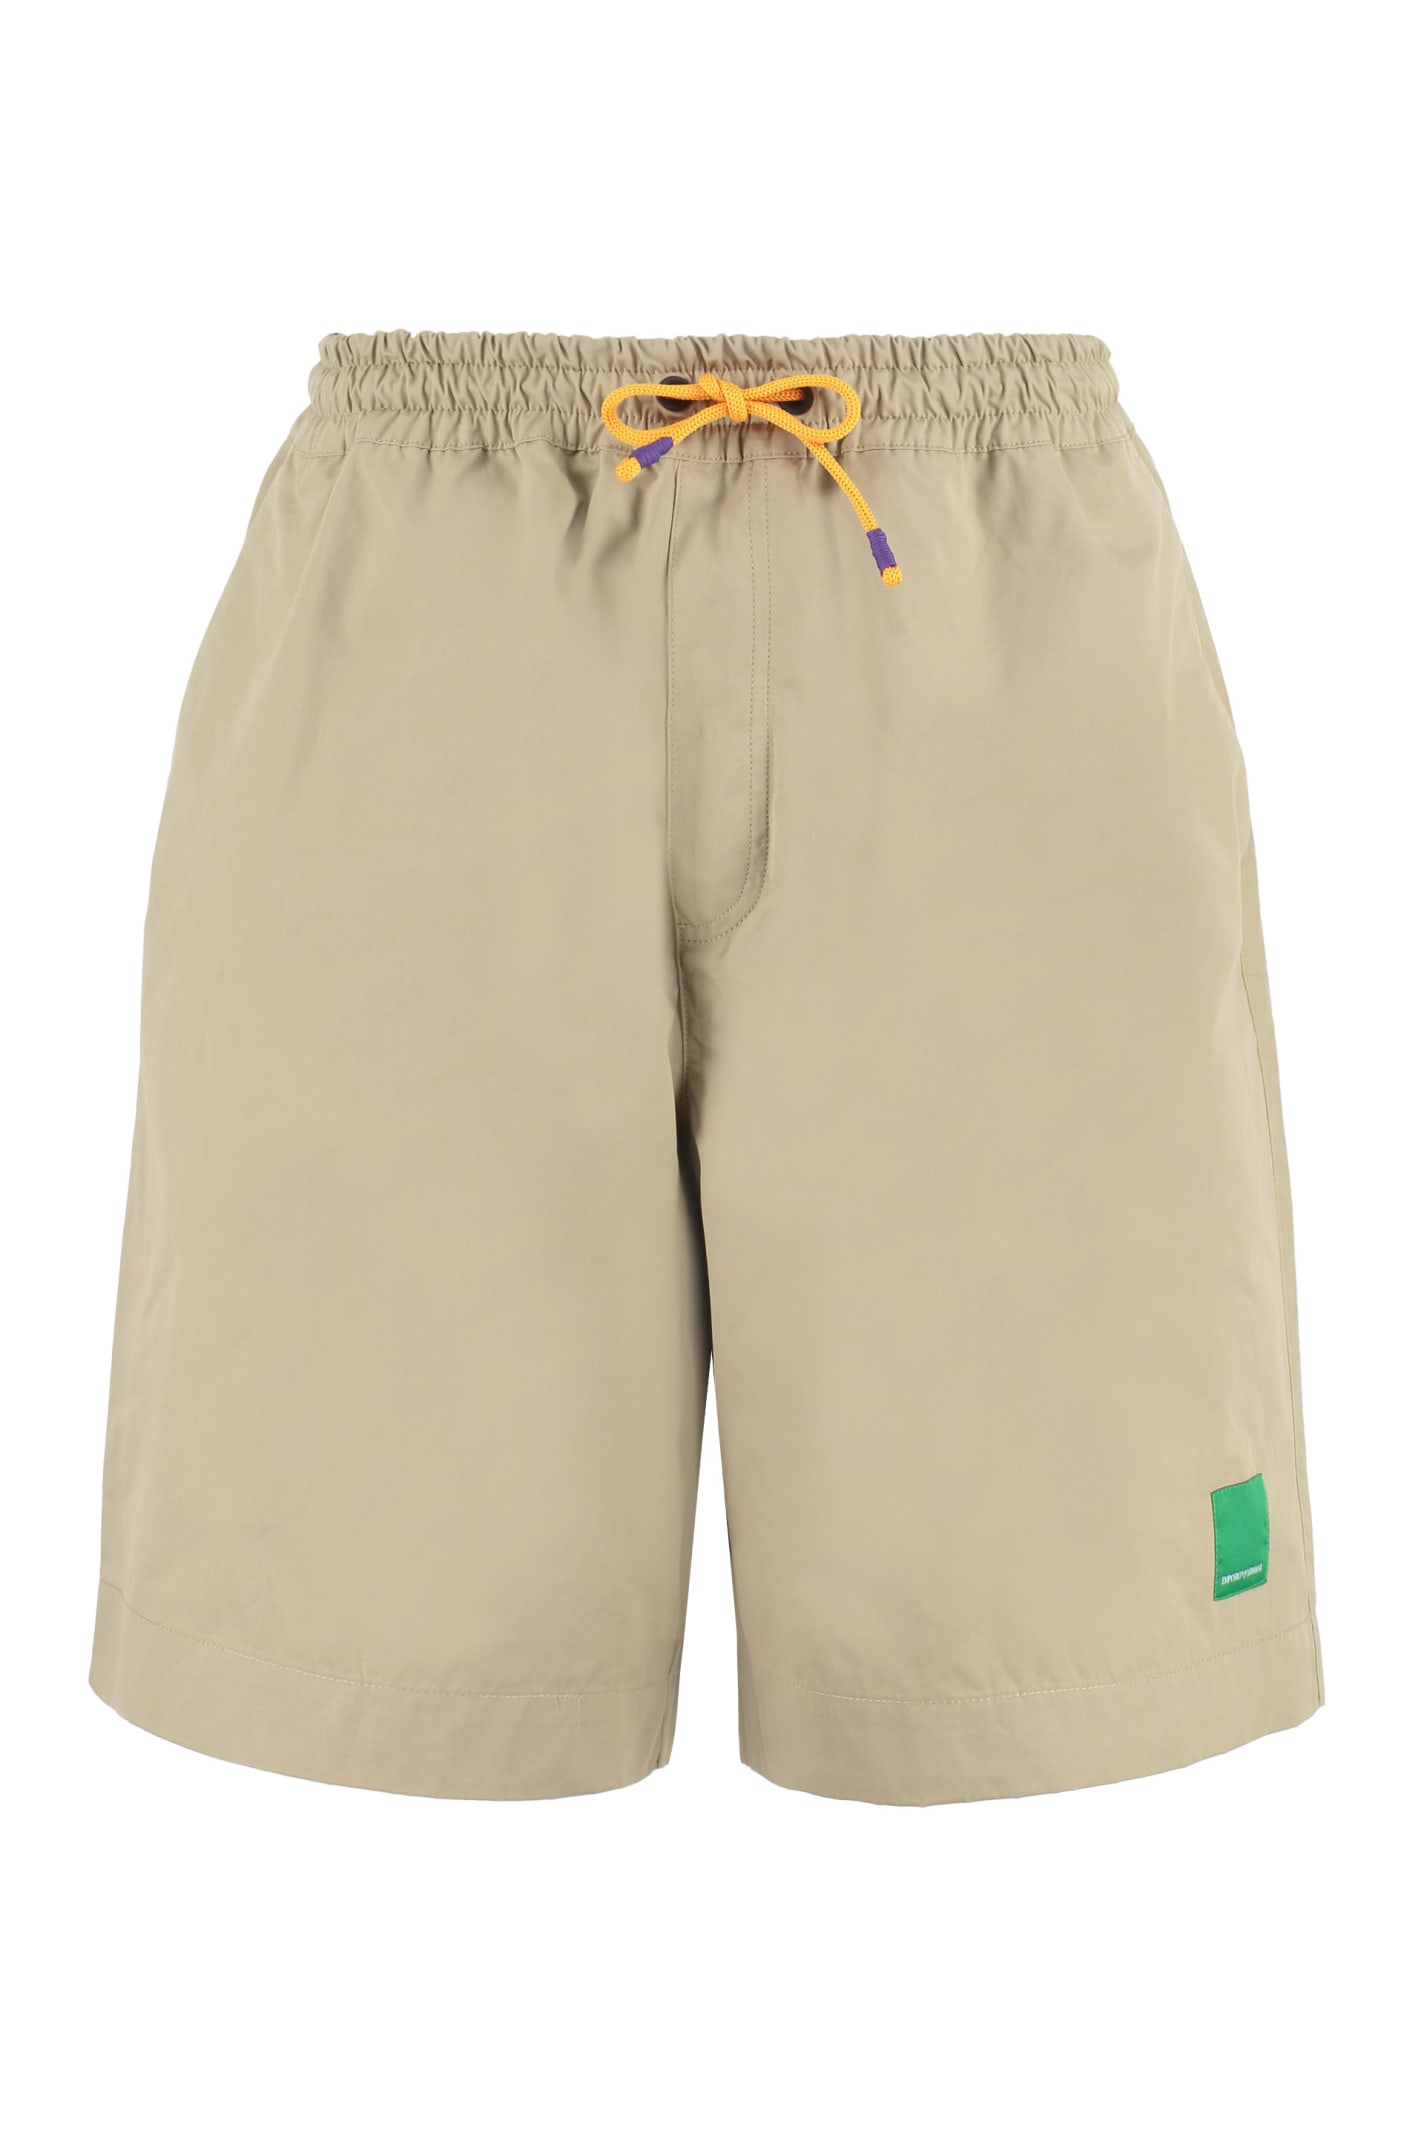 Emporio Armani Sustainability Project - Cotton Bermuda Shorts